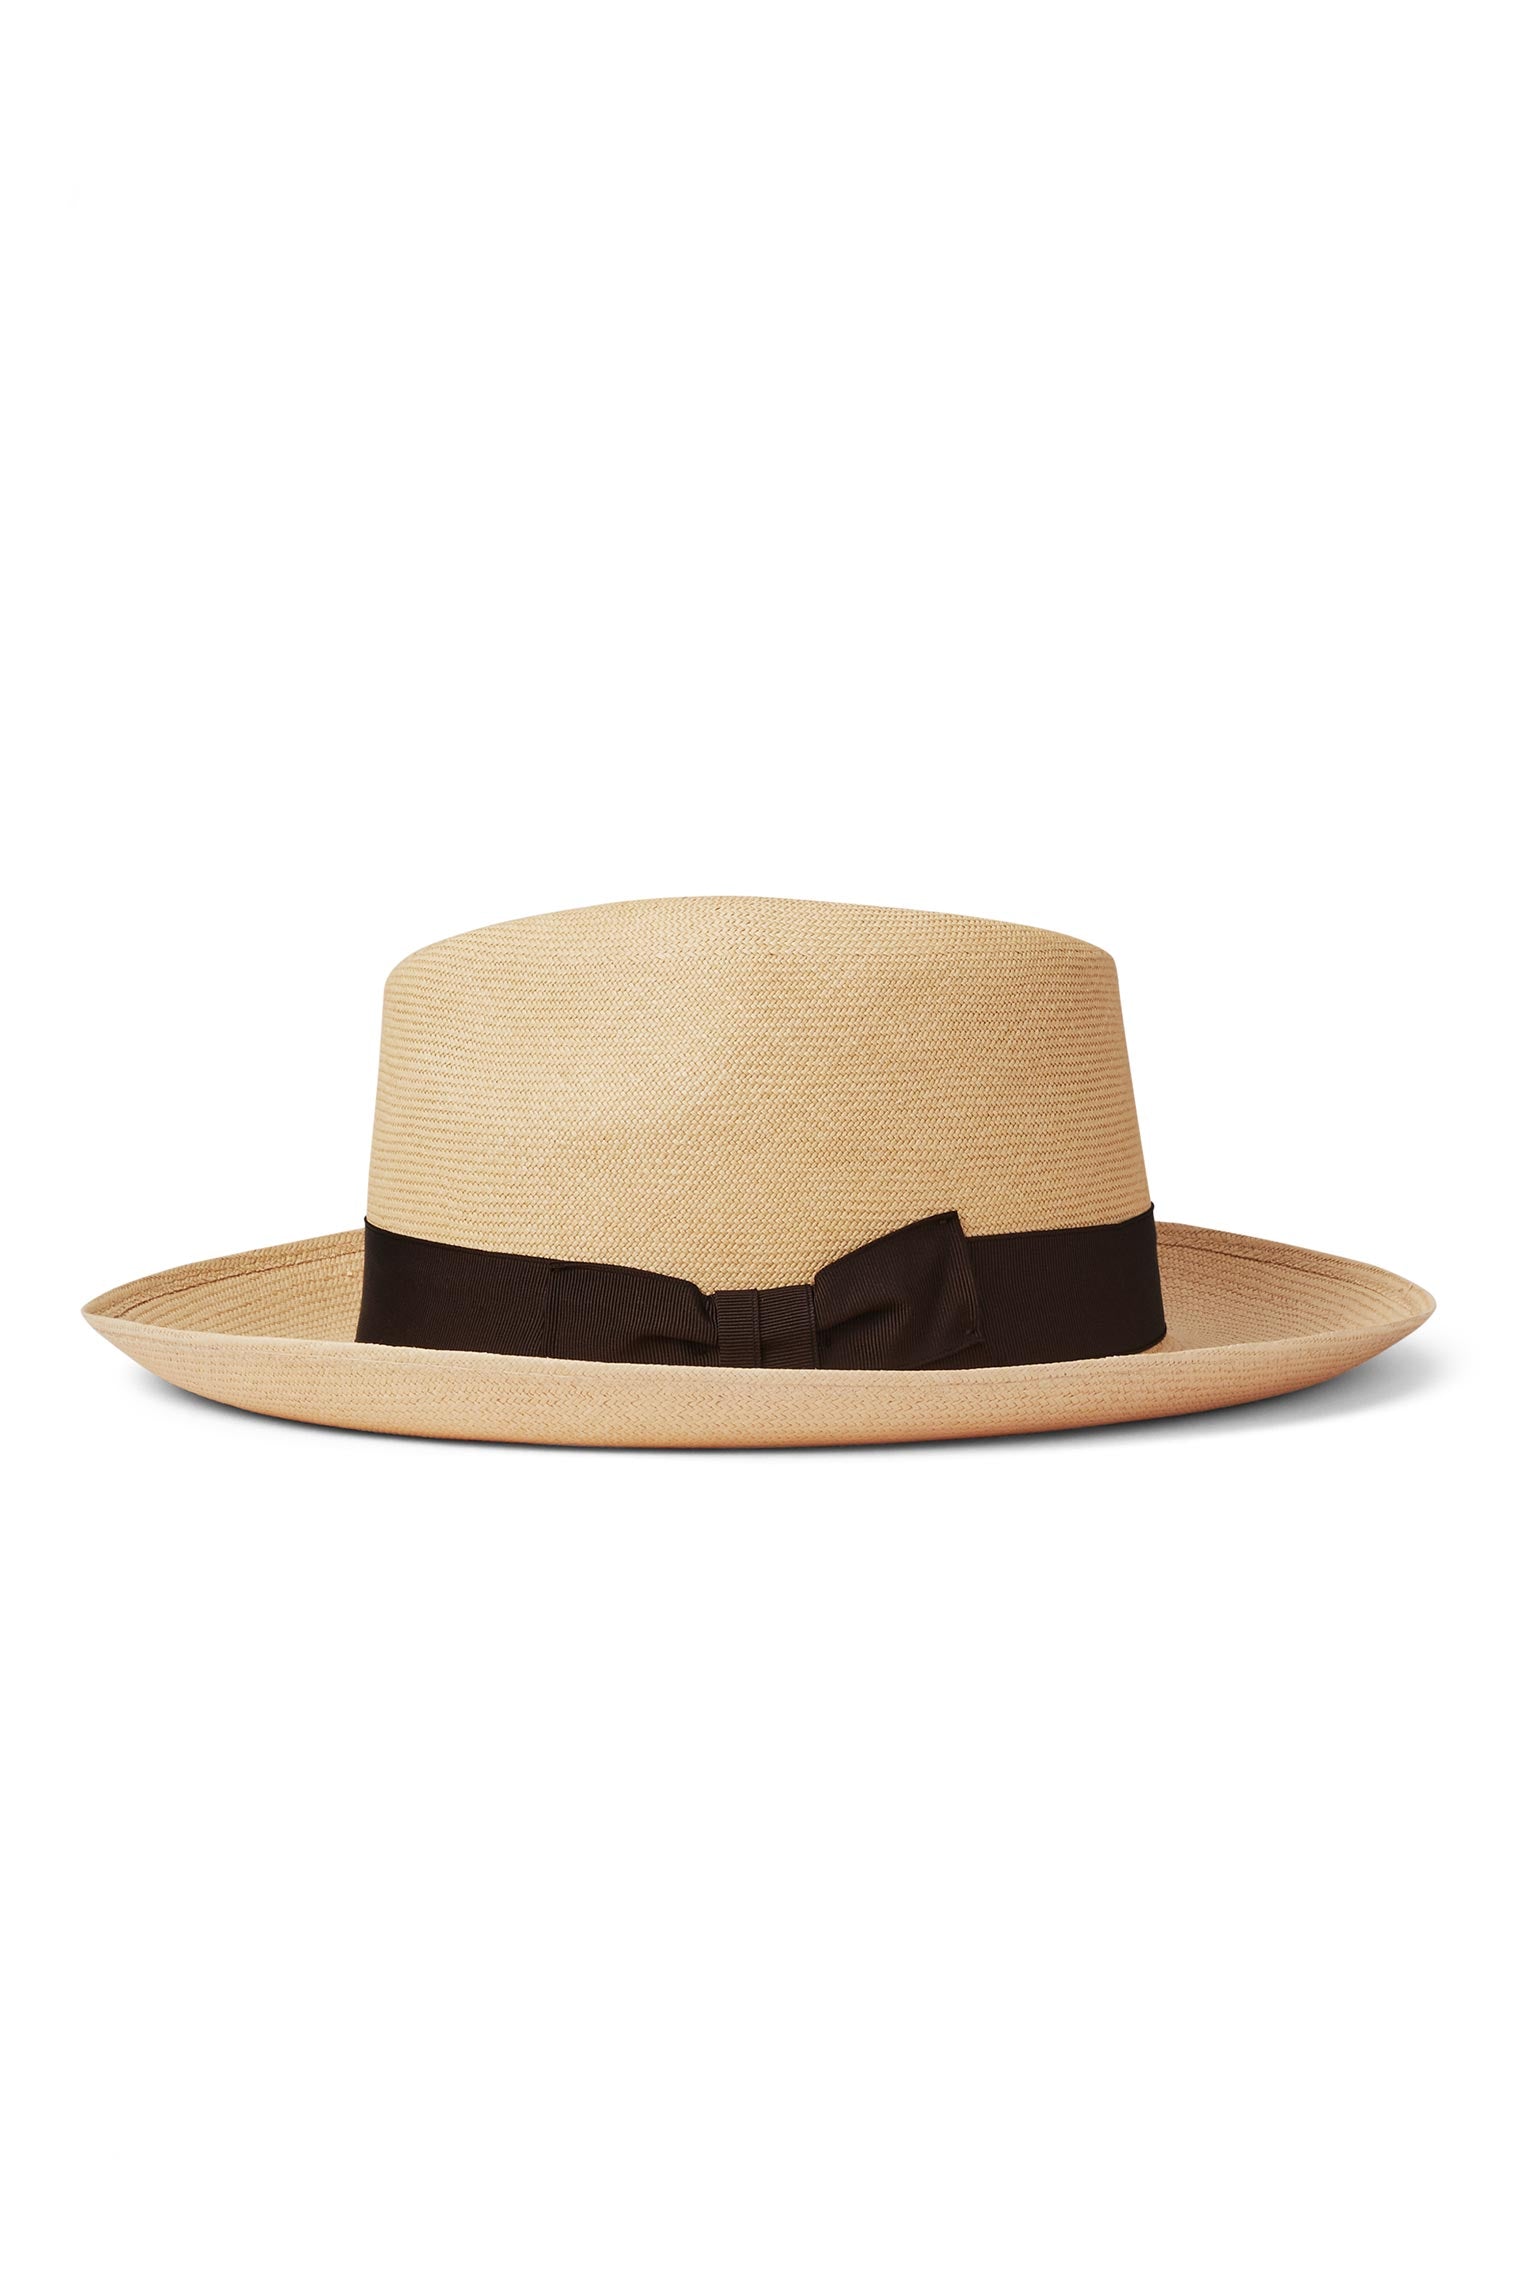 Ventnor Cuenca Ultra-fino Panama - Sun Hats & Boaters - Lock & Co. Hatters London UK